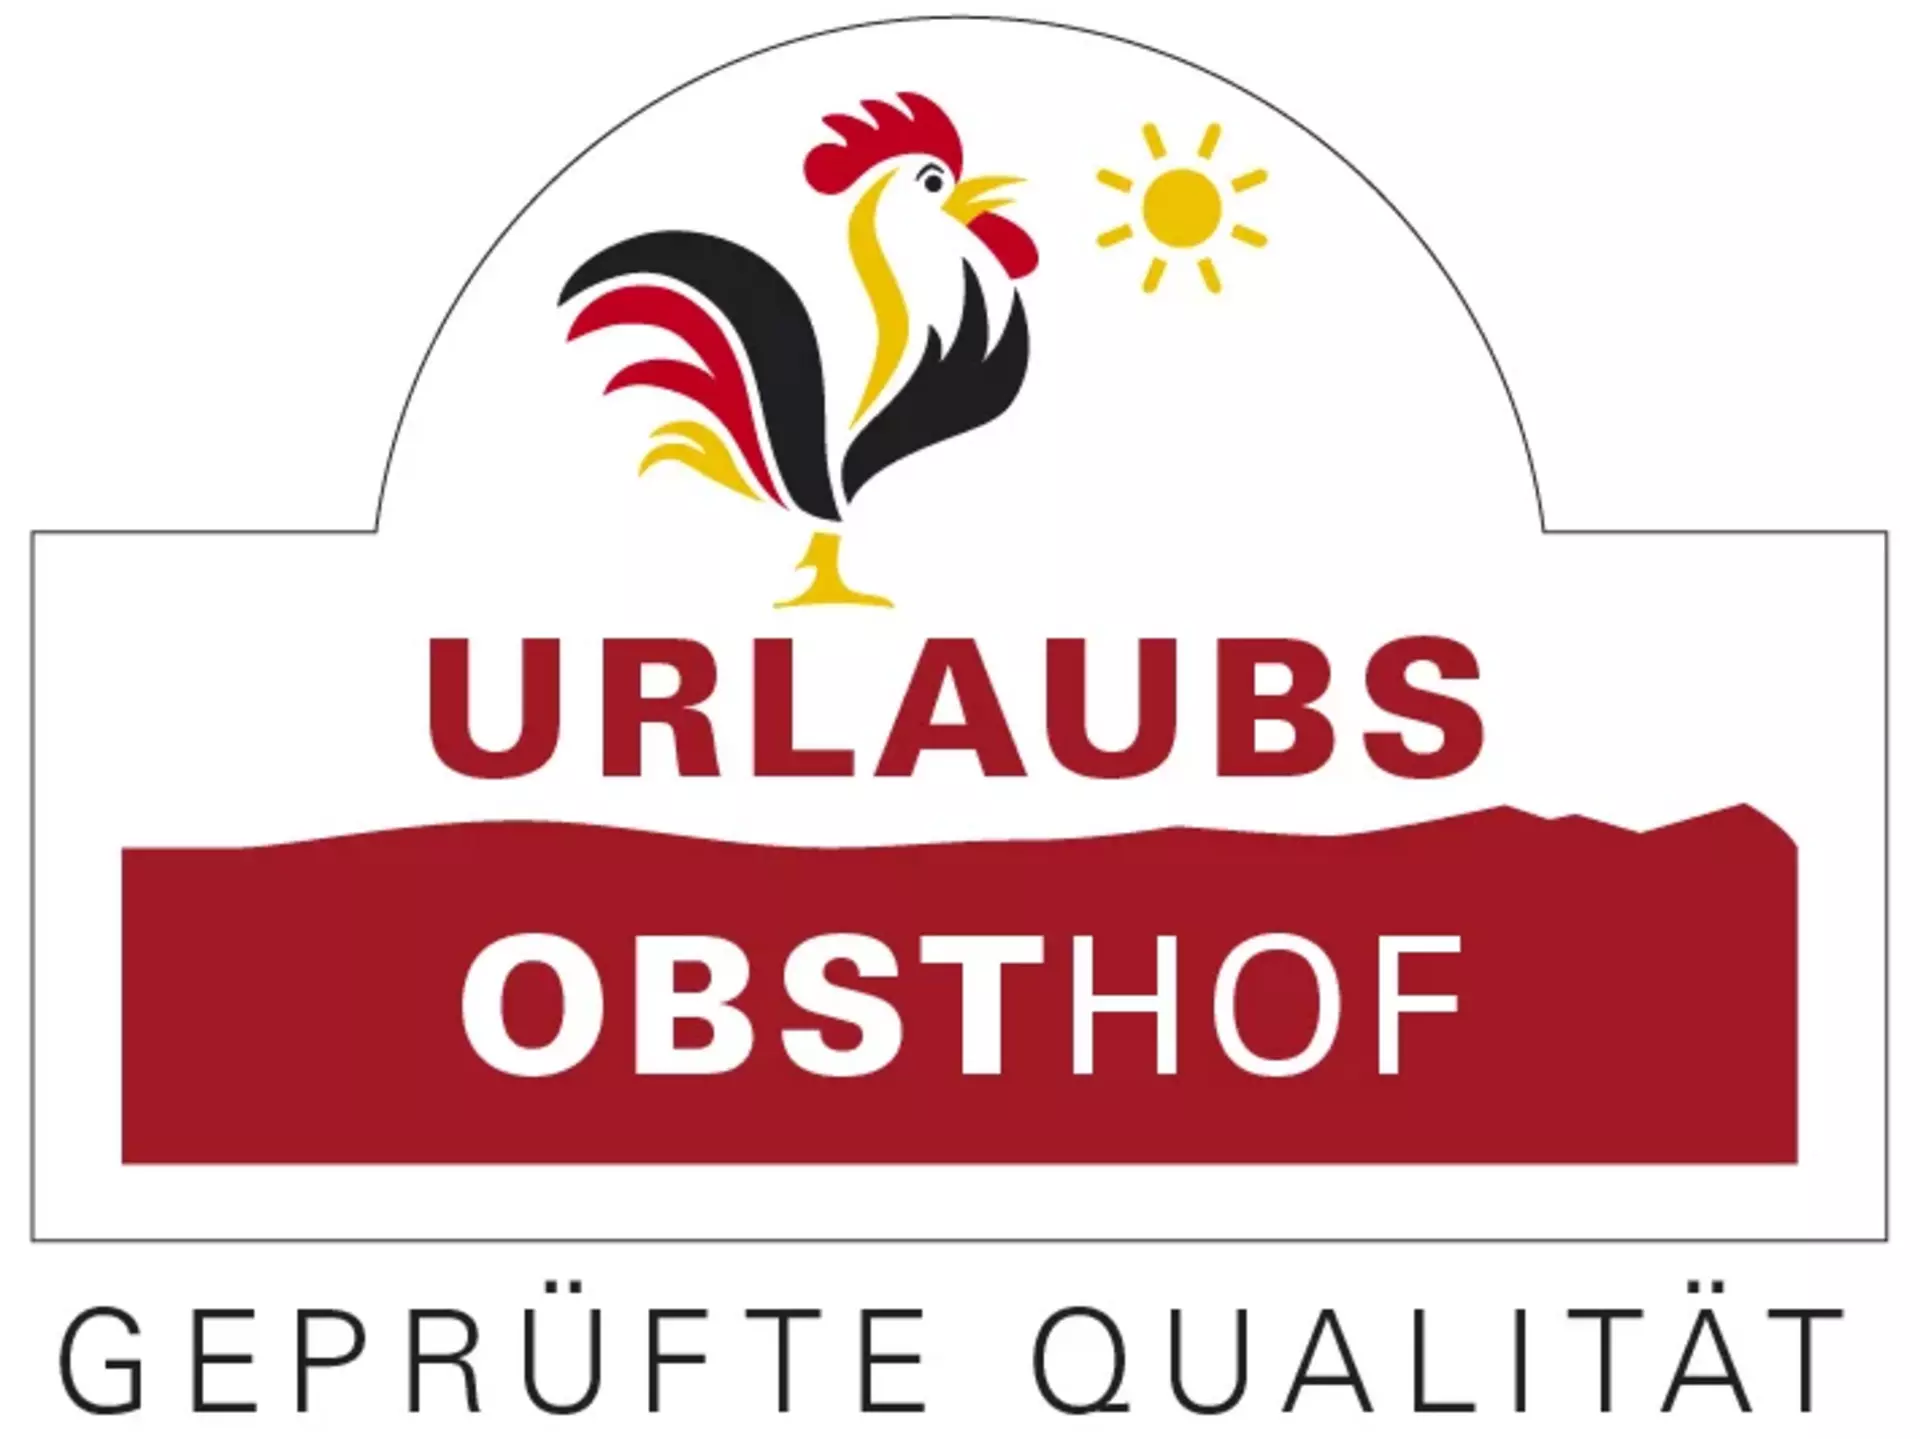 Gütesiegel "Qualitätsgeprüfter UrlaubsObsthof" der Bundesarbeitsgemeinschaft für Urlaub auf dem Bauernhof und Landtourismus in Deutschland e. V.